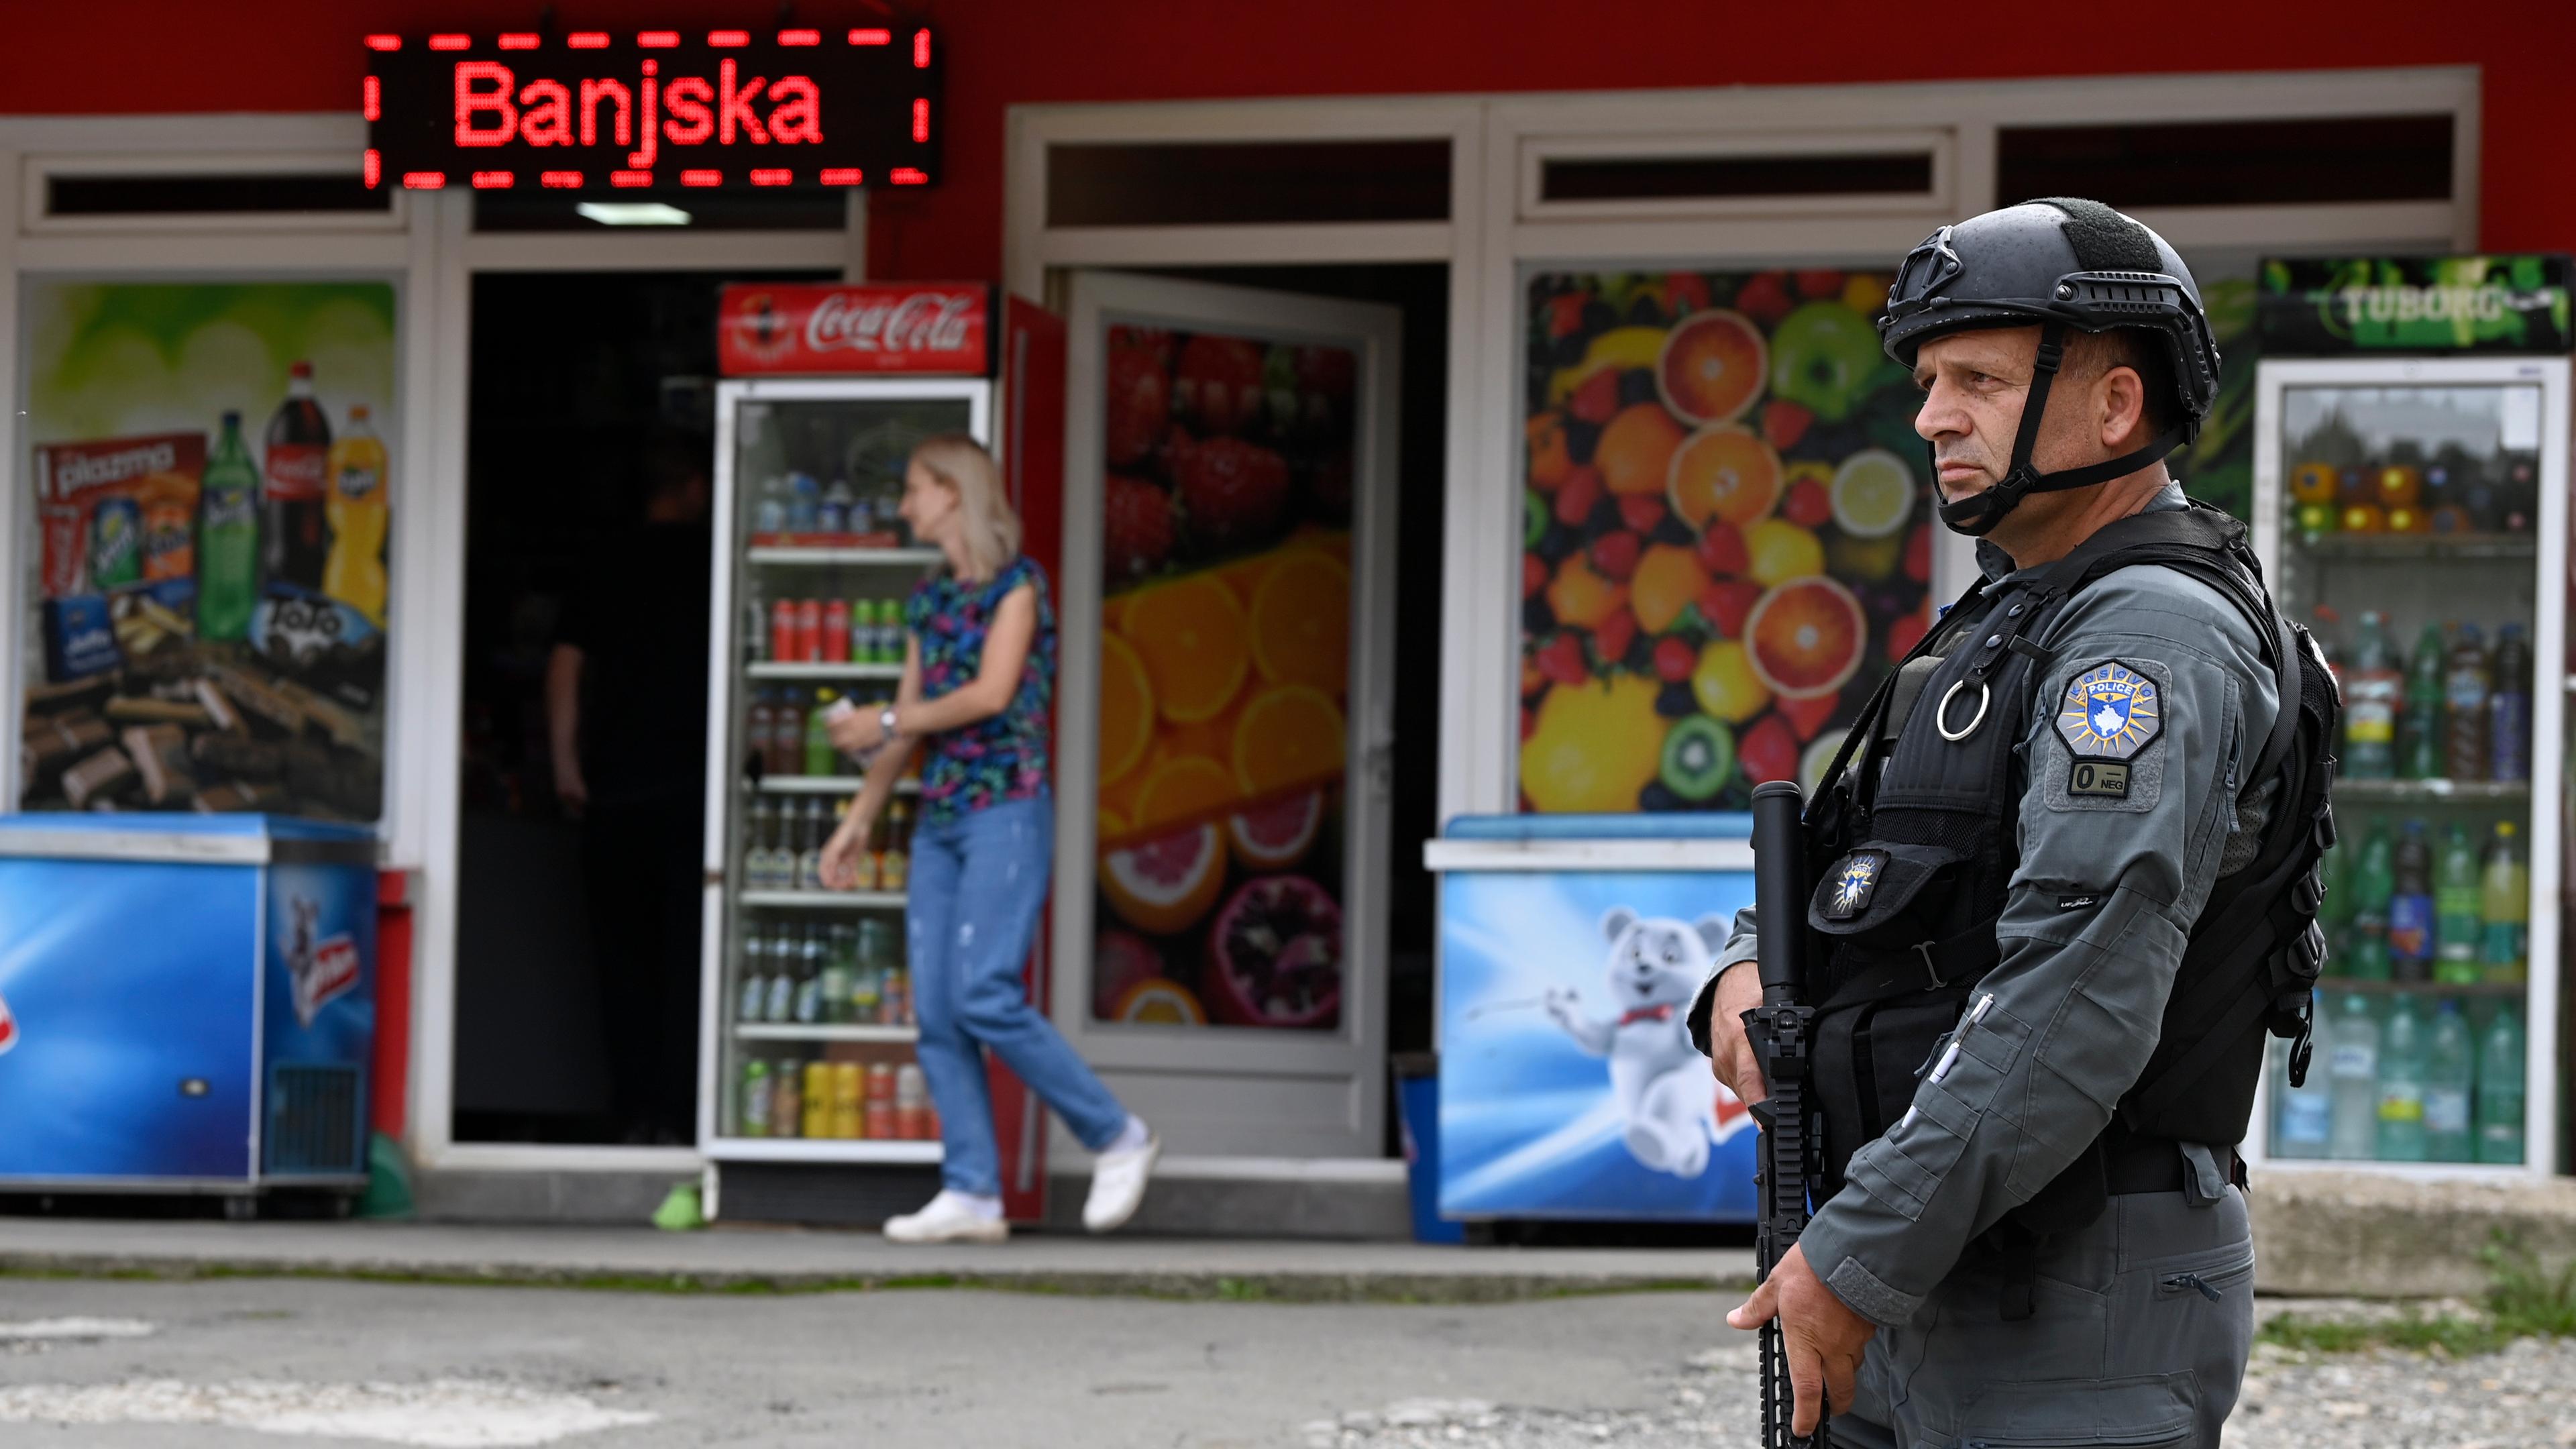 Ein kosovarischer Polizist in dunkler Uniform mit Gewehr, Helm und Schutzkleidung steht vor einem Supermarkt im Ort Banjska. Es leuchtet ein rotes Neon-Schild mit der Aufschrift "Banjska" im Hintergrund